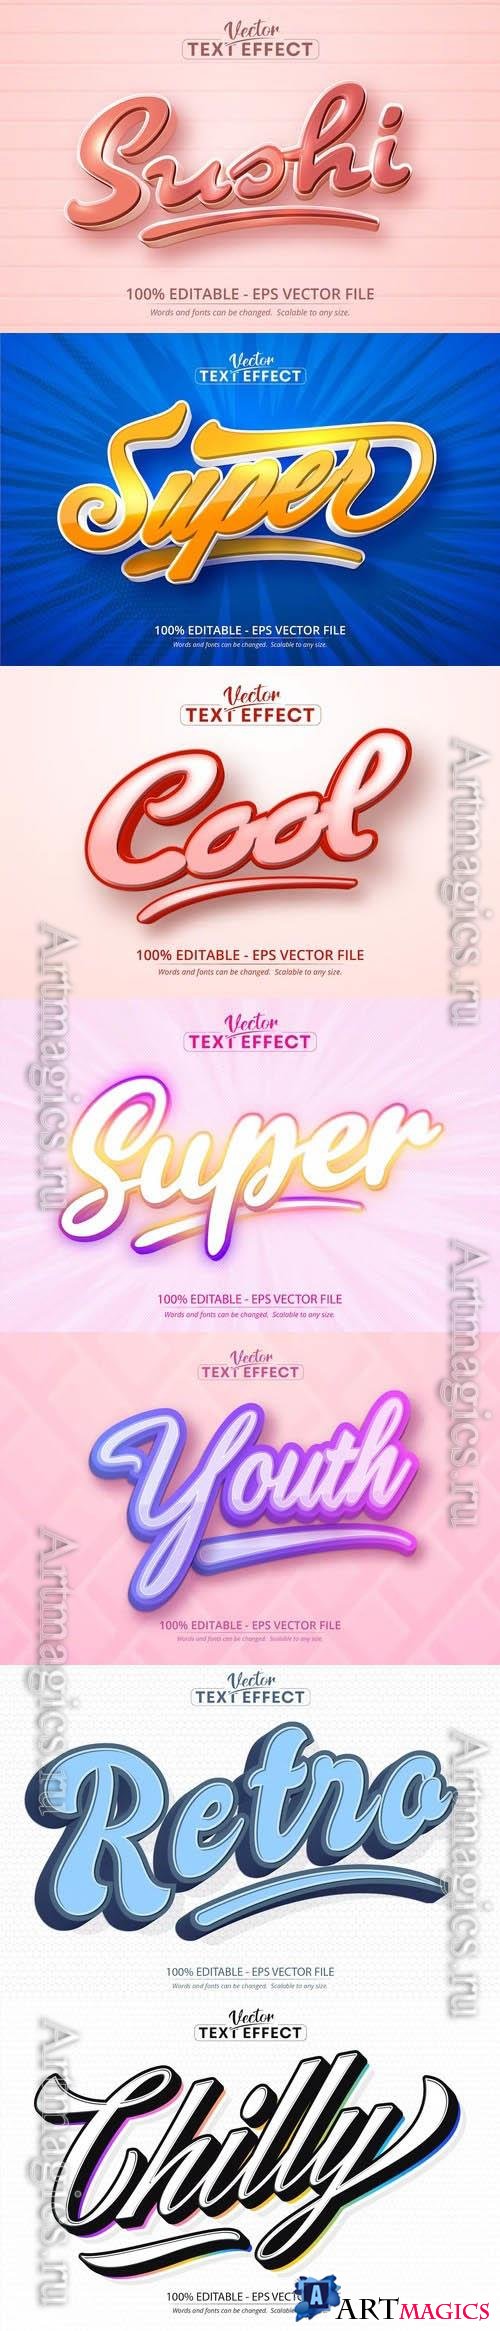 Vector 3d text editable, text effect font vol 127